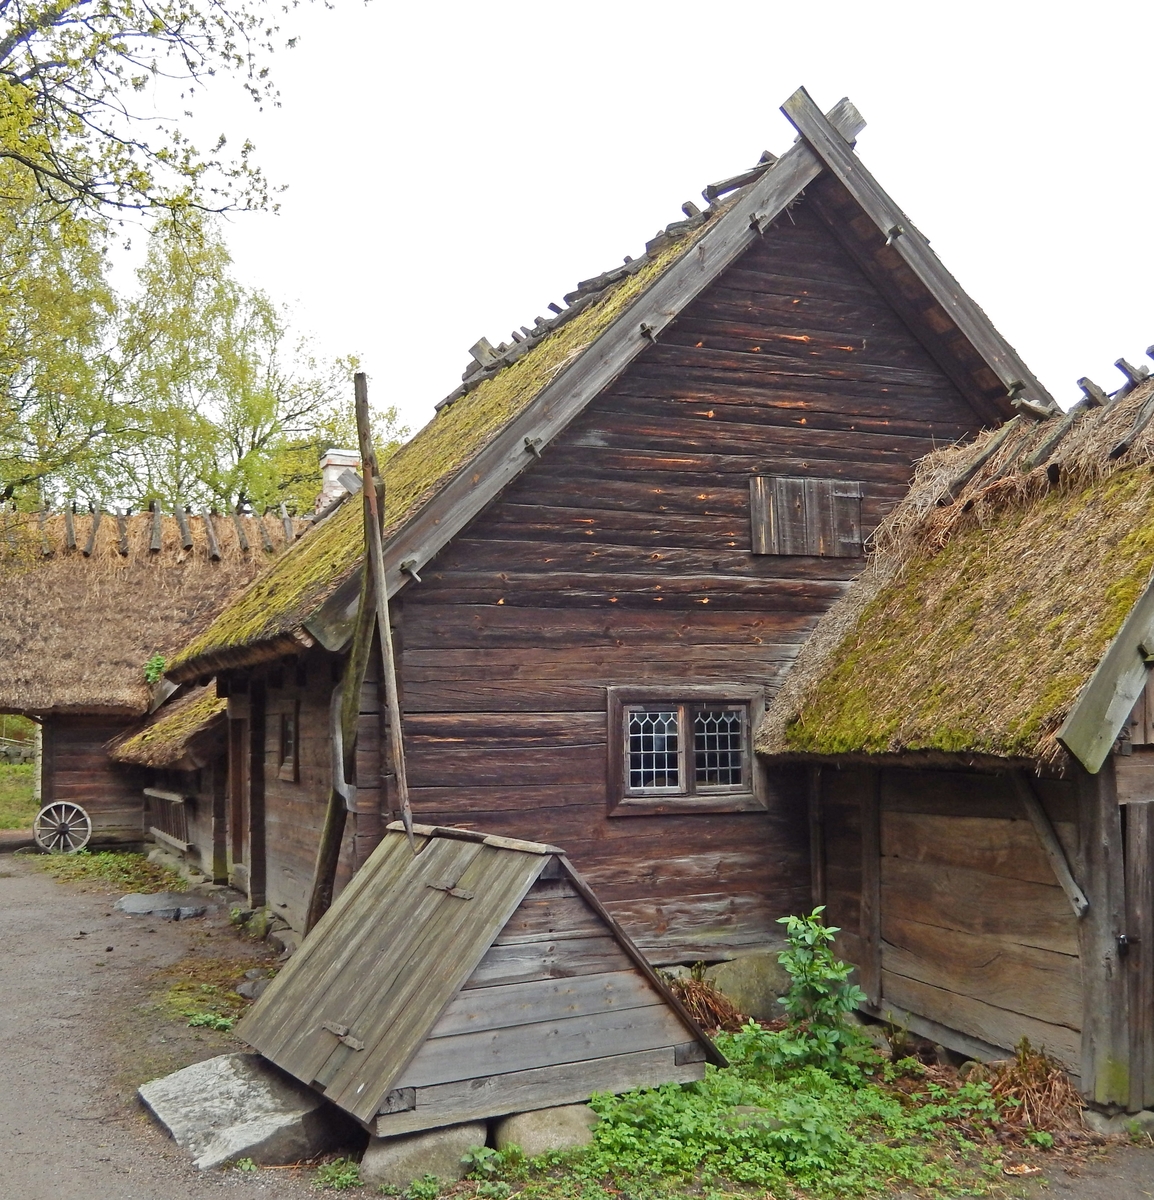 Boningslängan på Oktorpsgården består av tre huskroppar; stugan samt ”framhäbbare” och ”bakhäbbare”. Stugan samt framhäbbare är timrade, bakhäbbaret är uppfört i skiftesverk. Fasaden är omålad. Byggnaderna har sadeltak på olika nivåer, samtliga täckta med halm.

Boningslängan flyttades till Skansen 1896 från Oktorps by i Slöinge socken, Årstads härad i Halland.